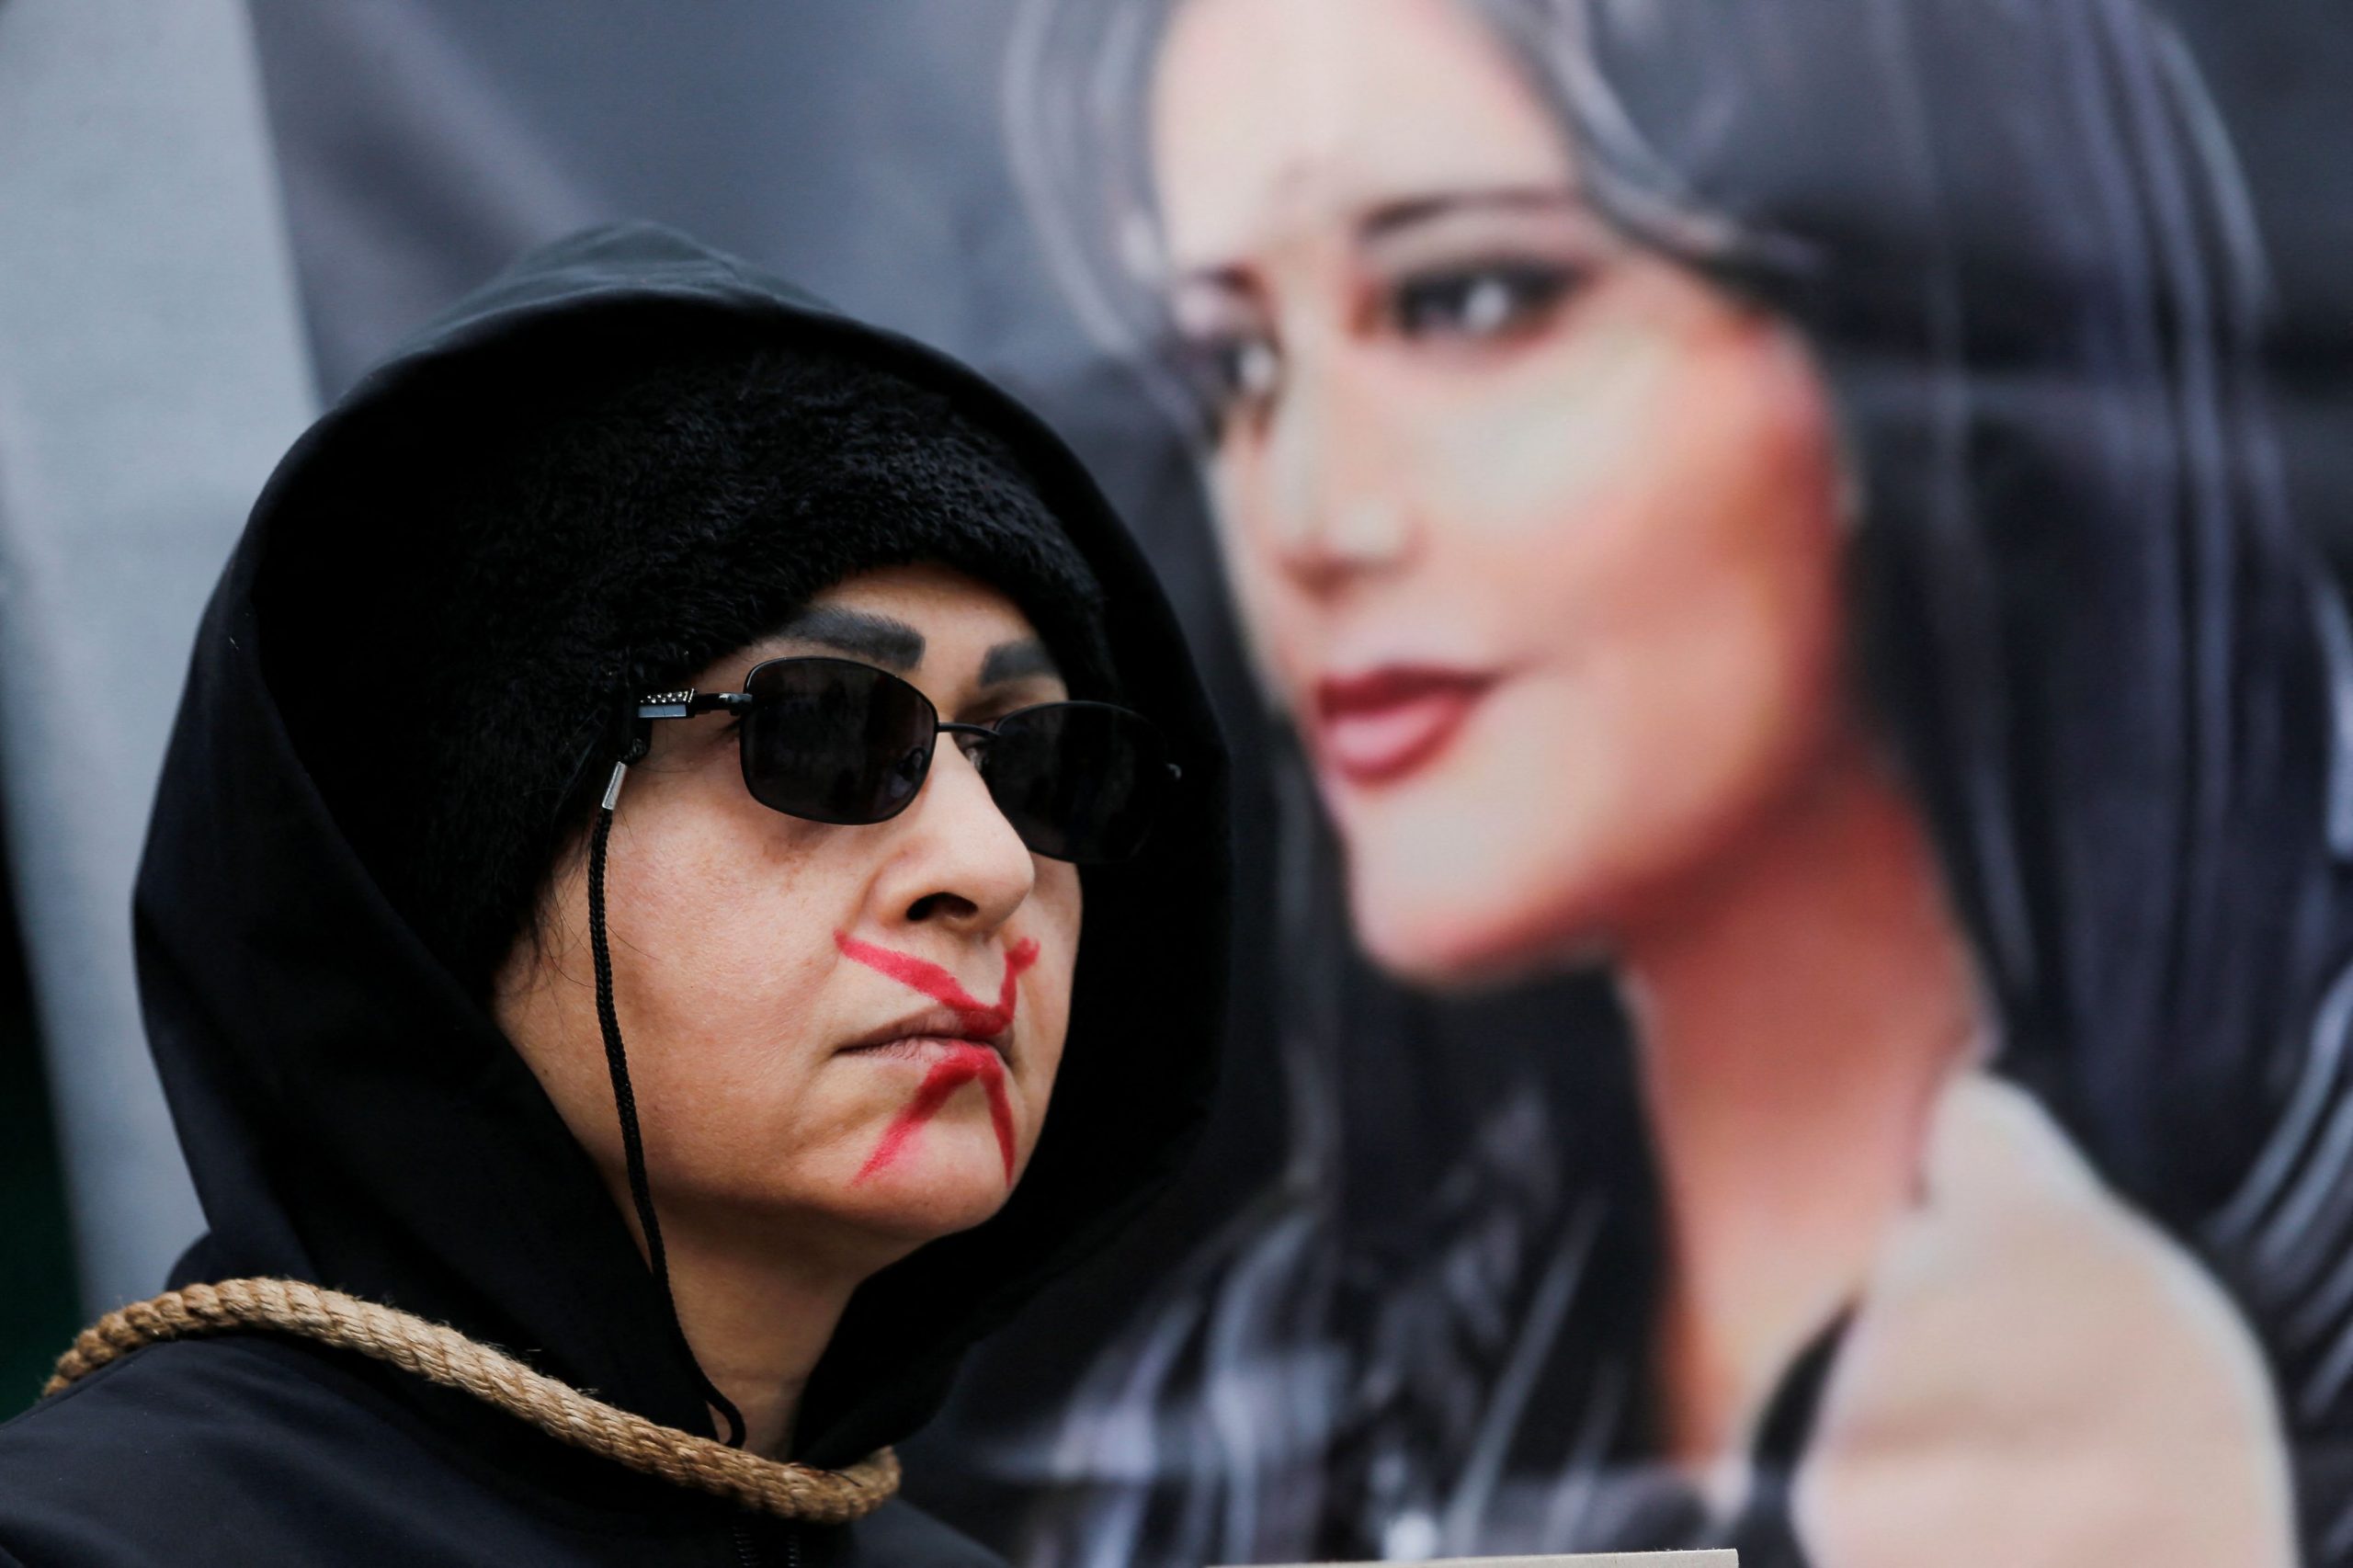 Ιράν: Κρύβοντας ακτιβιστές σε κοινή θέα – Το δίκτυο των πολιτών που προστατεύει τους διαδηλωτές